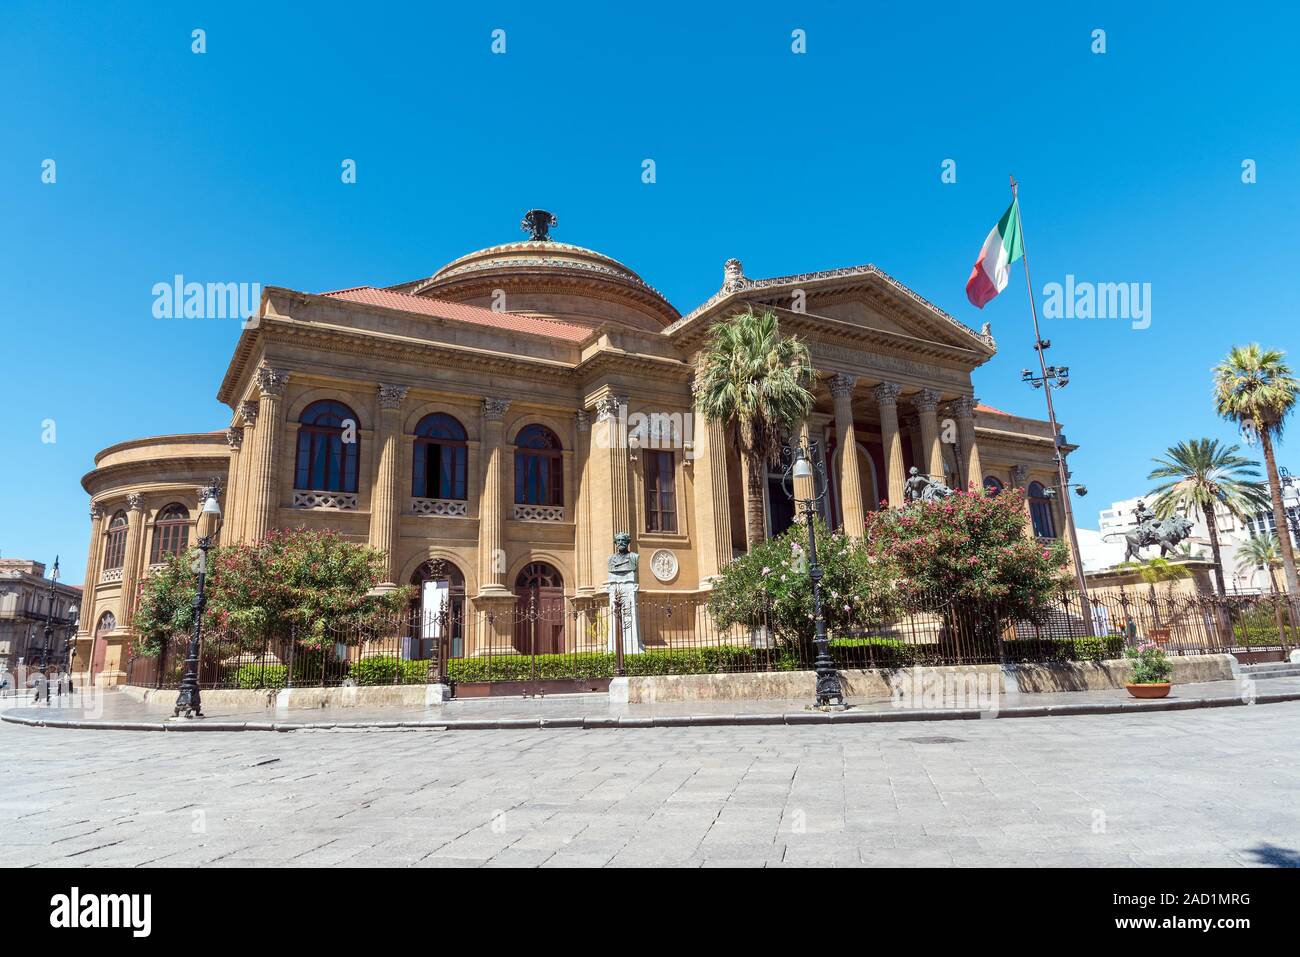 Le célèbre Teatro Massimo de Palerme, l'un des plus grands cinémas d'Europe Banque D'Images